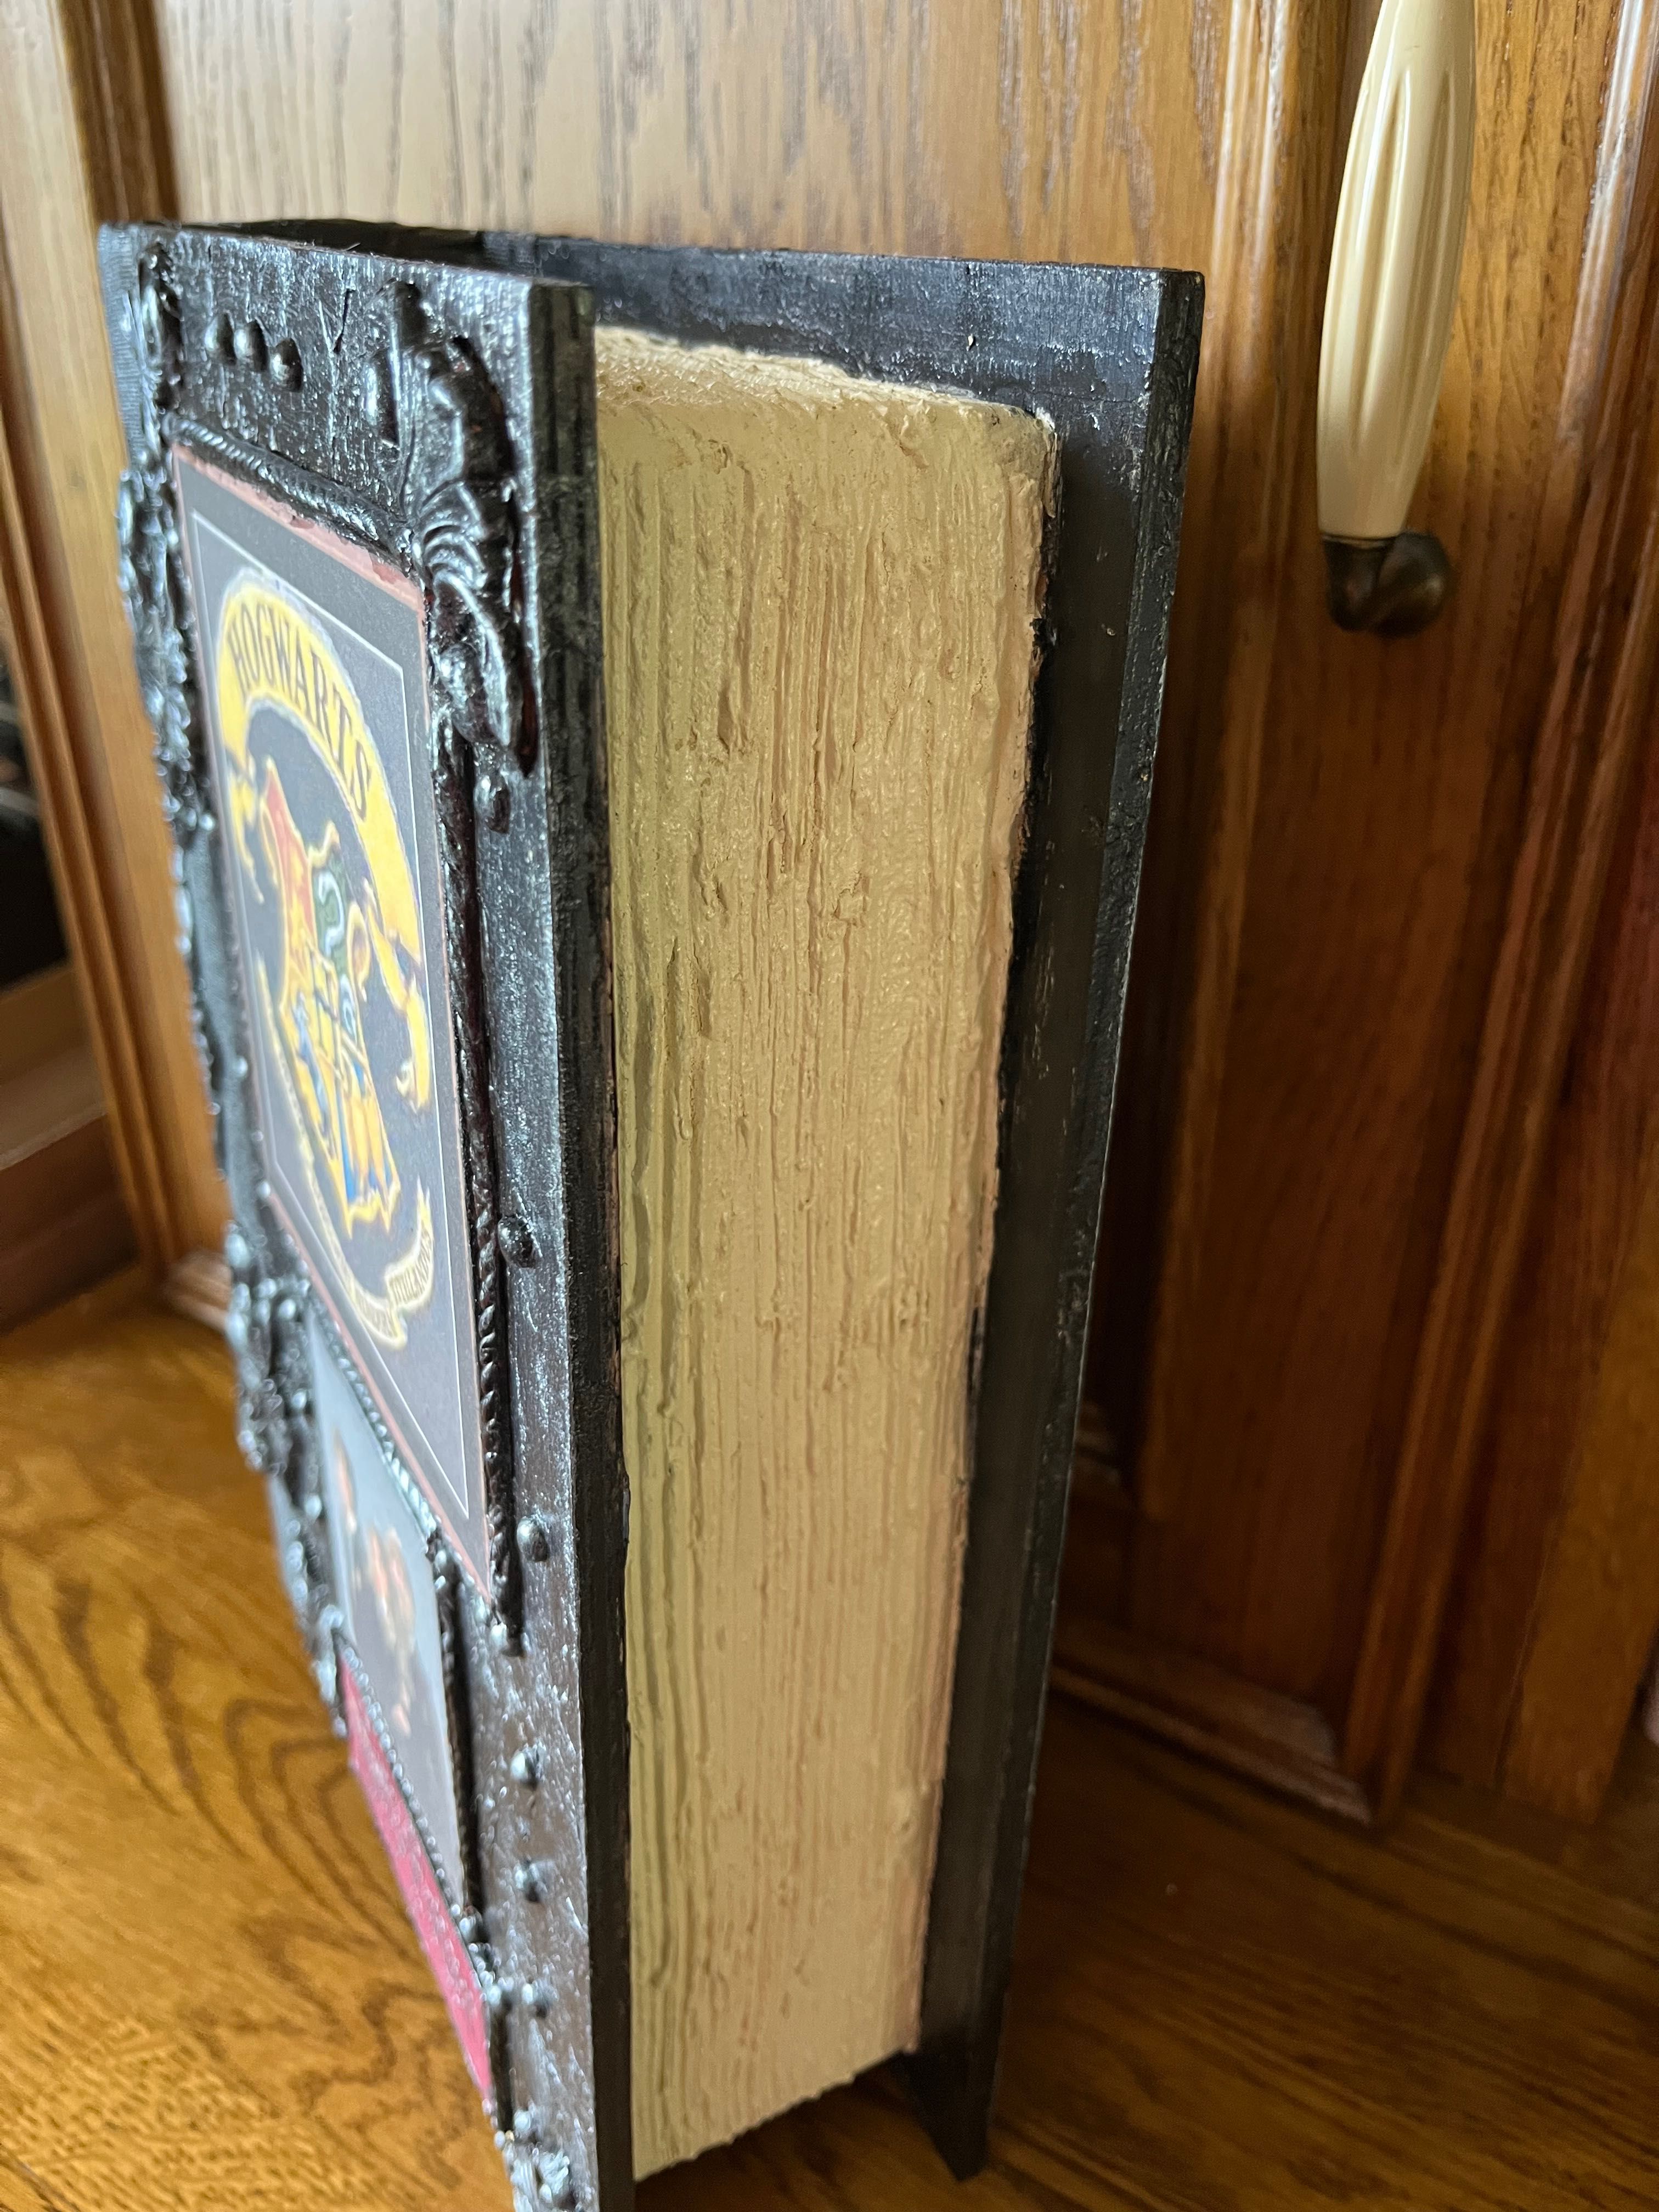 Wielka Księga Harrego Pottera - duża szkatuła